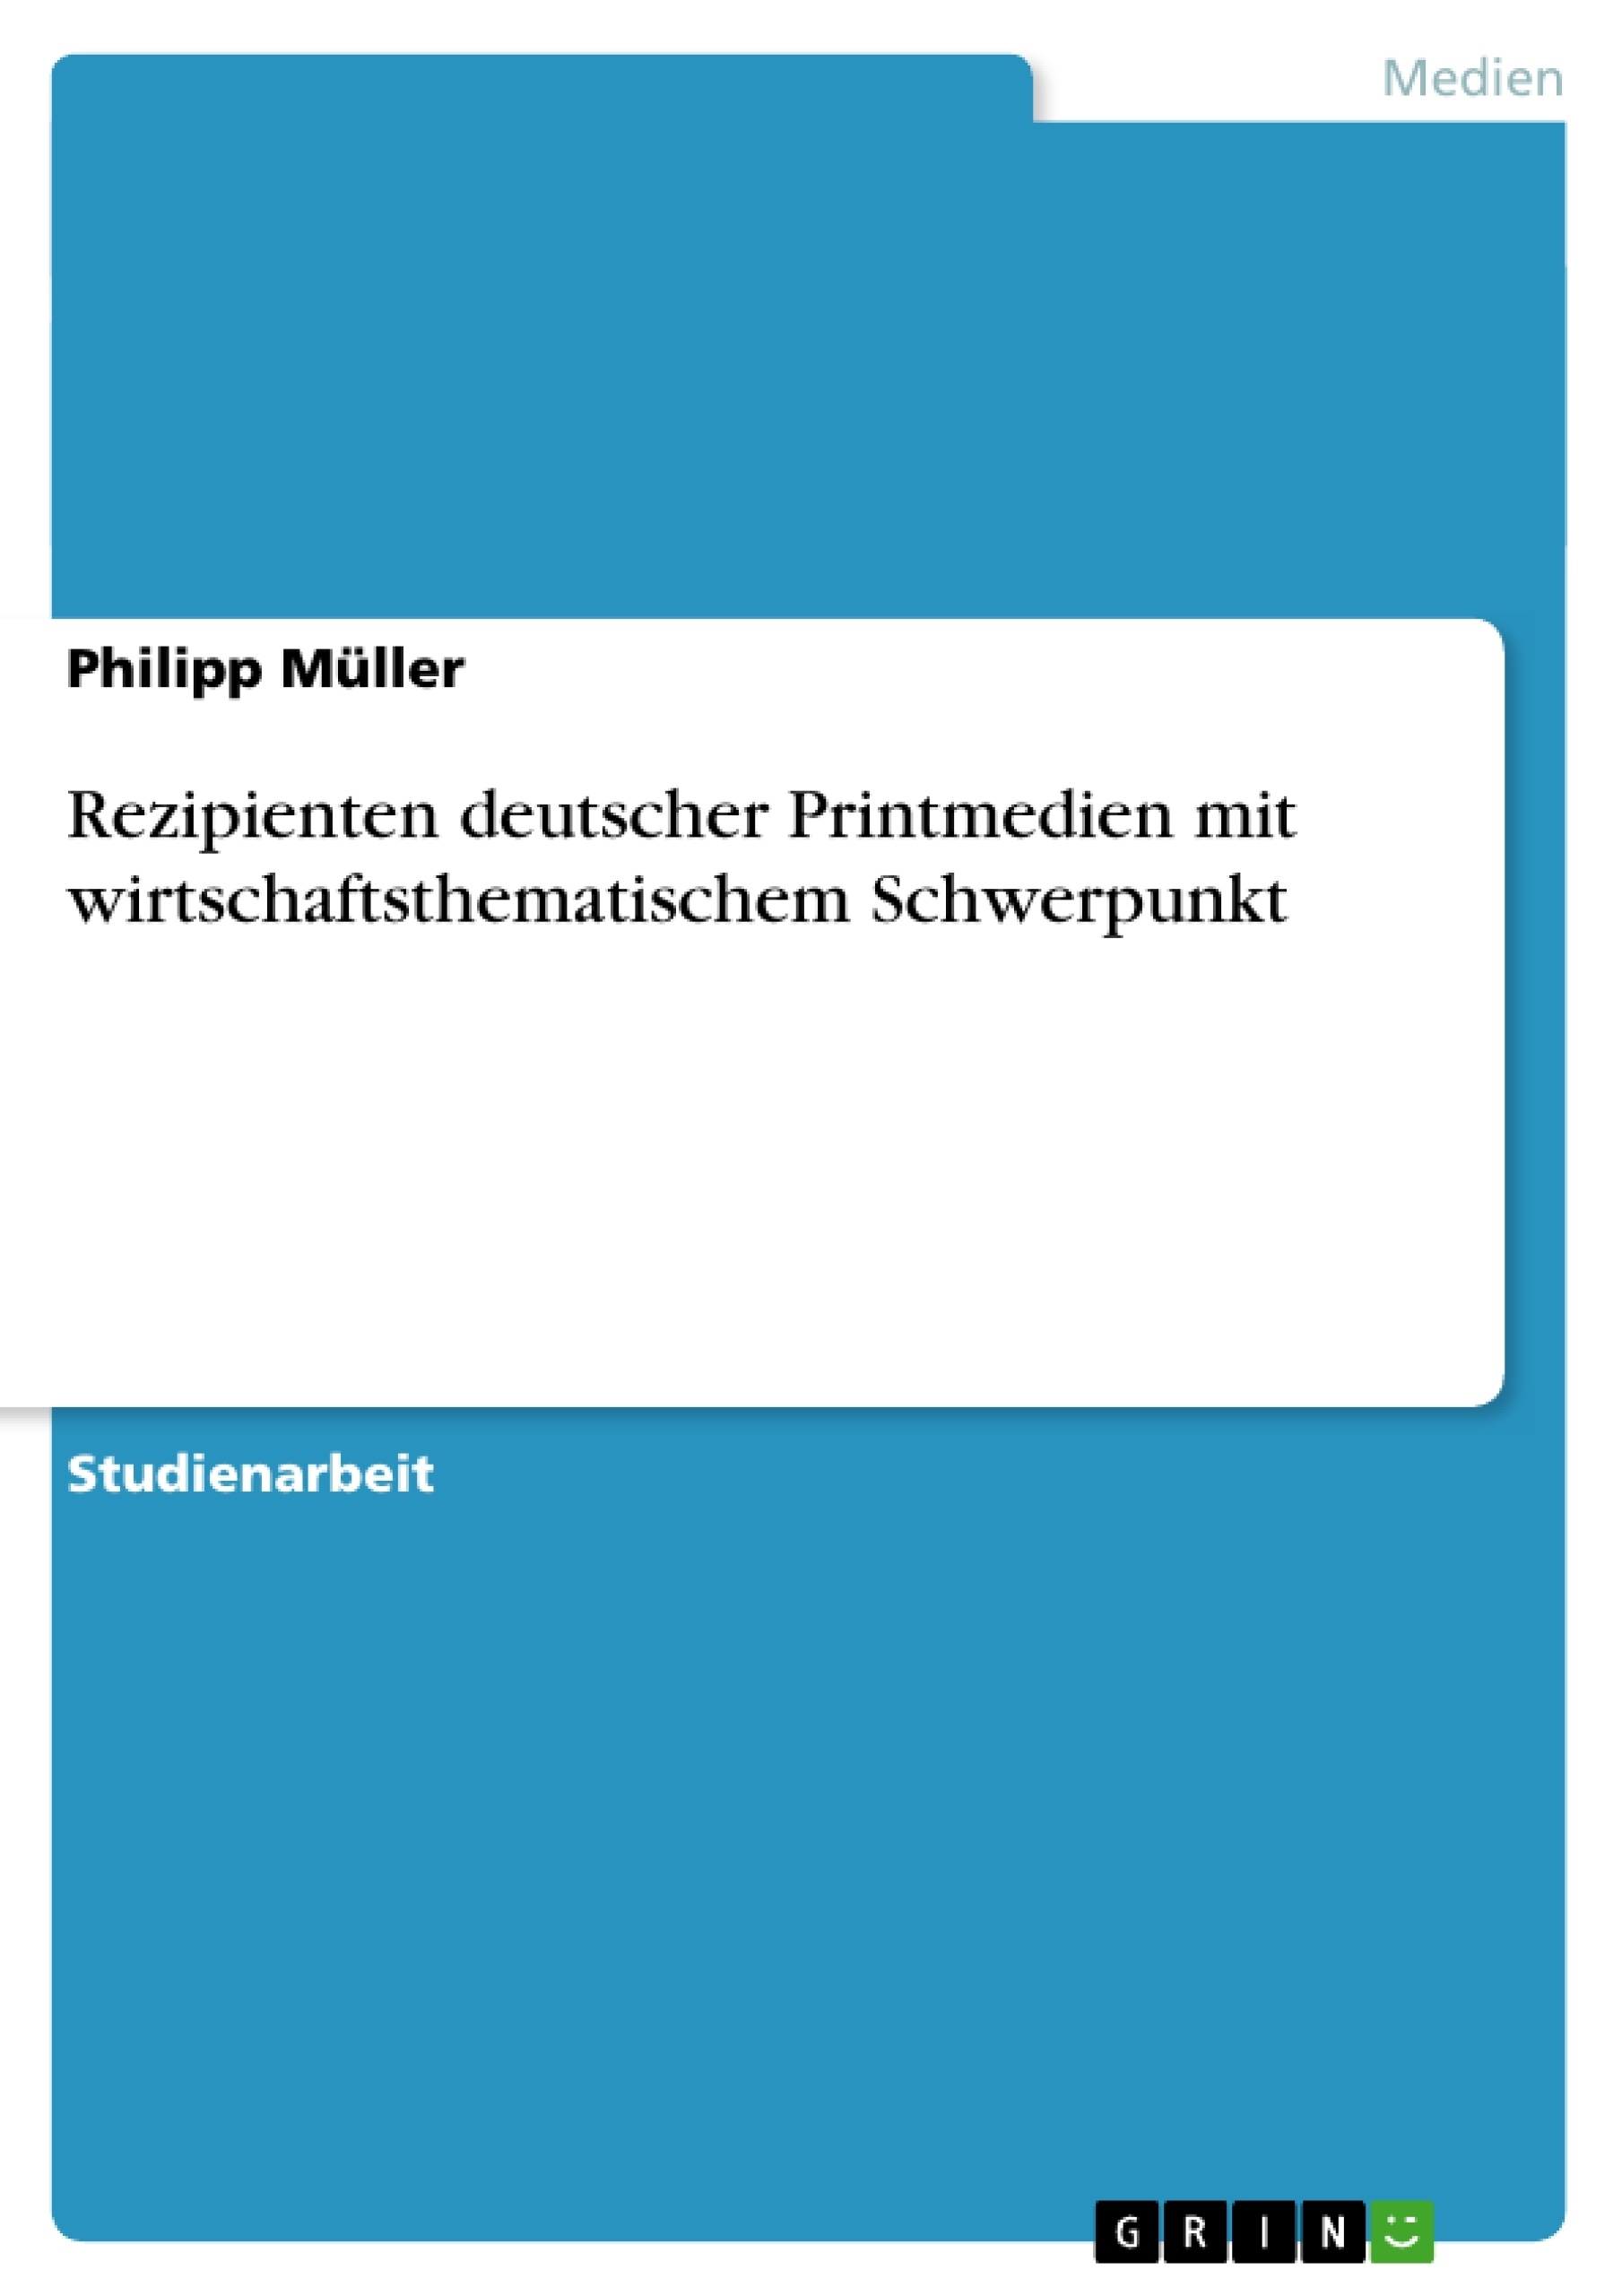 Título: Rezipienten deutscher Printmedien mit wirtschaftsthematischem Schwerpunkt